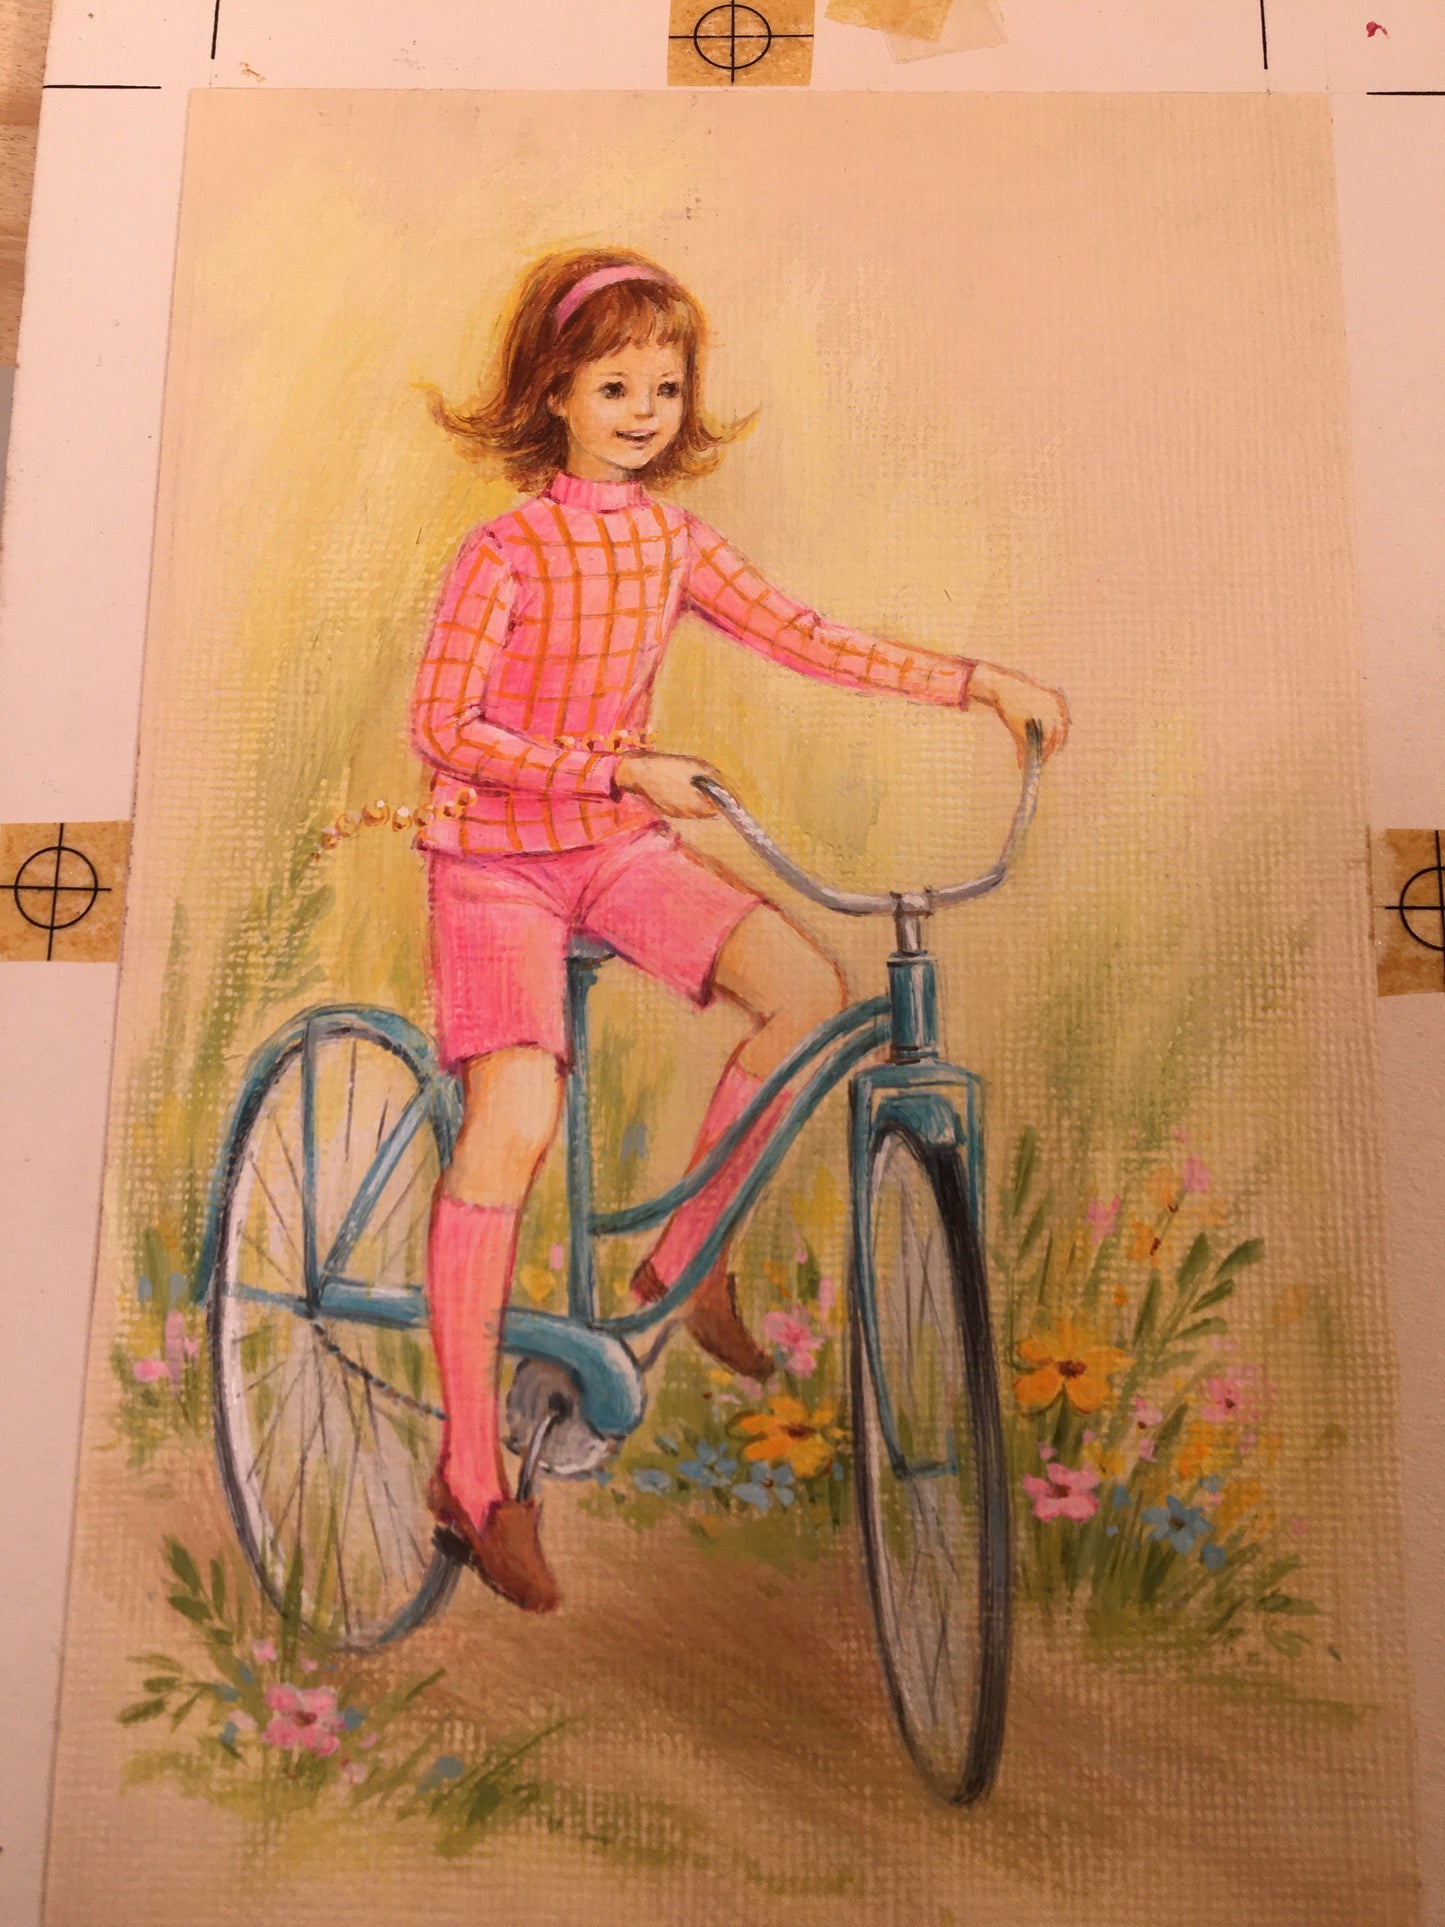 Vintage Artwork - Groovy Girl on Bicycle - 1960's Kids Art